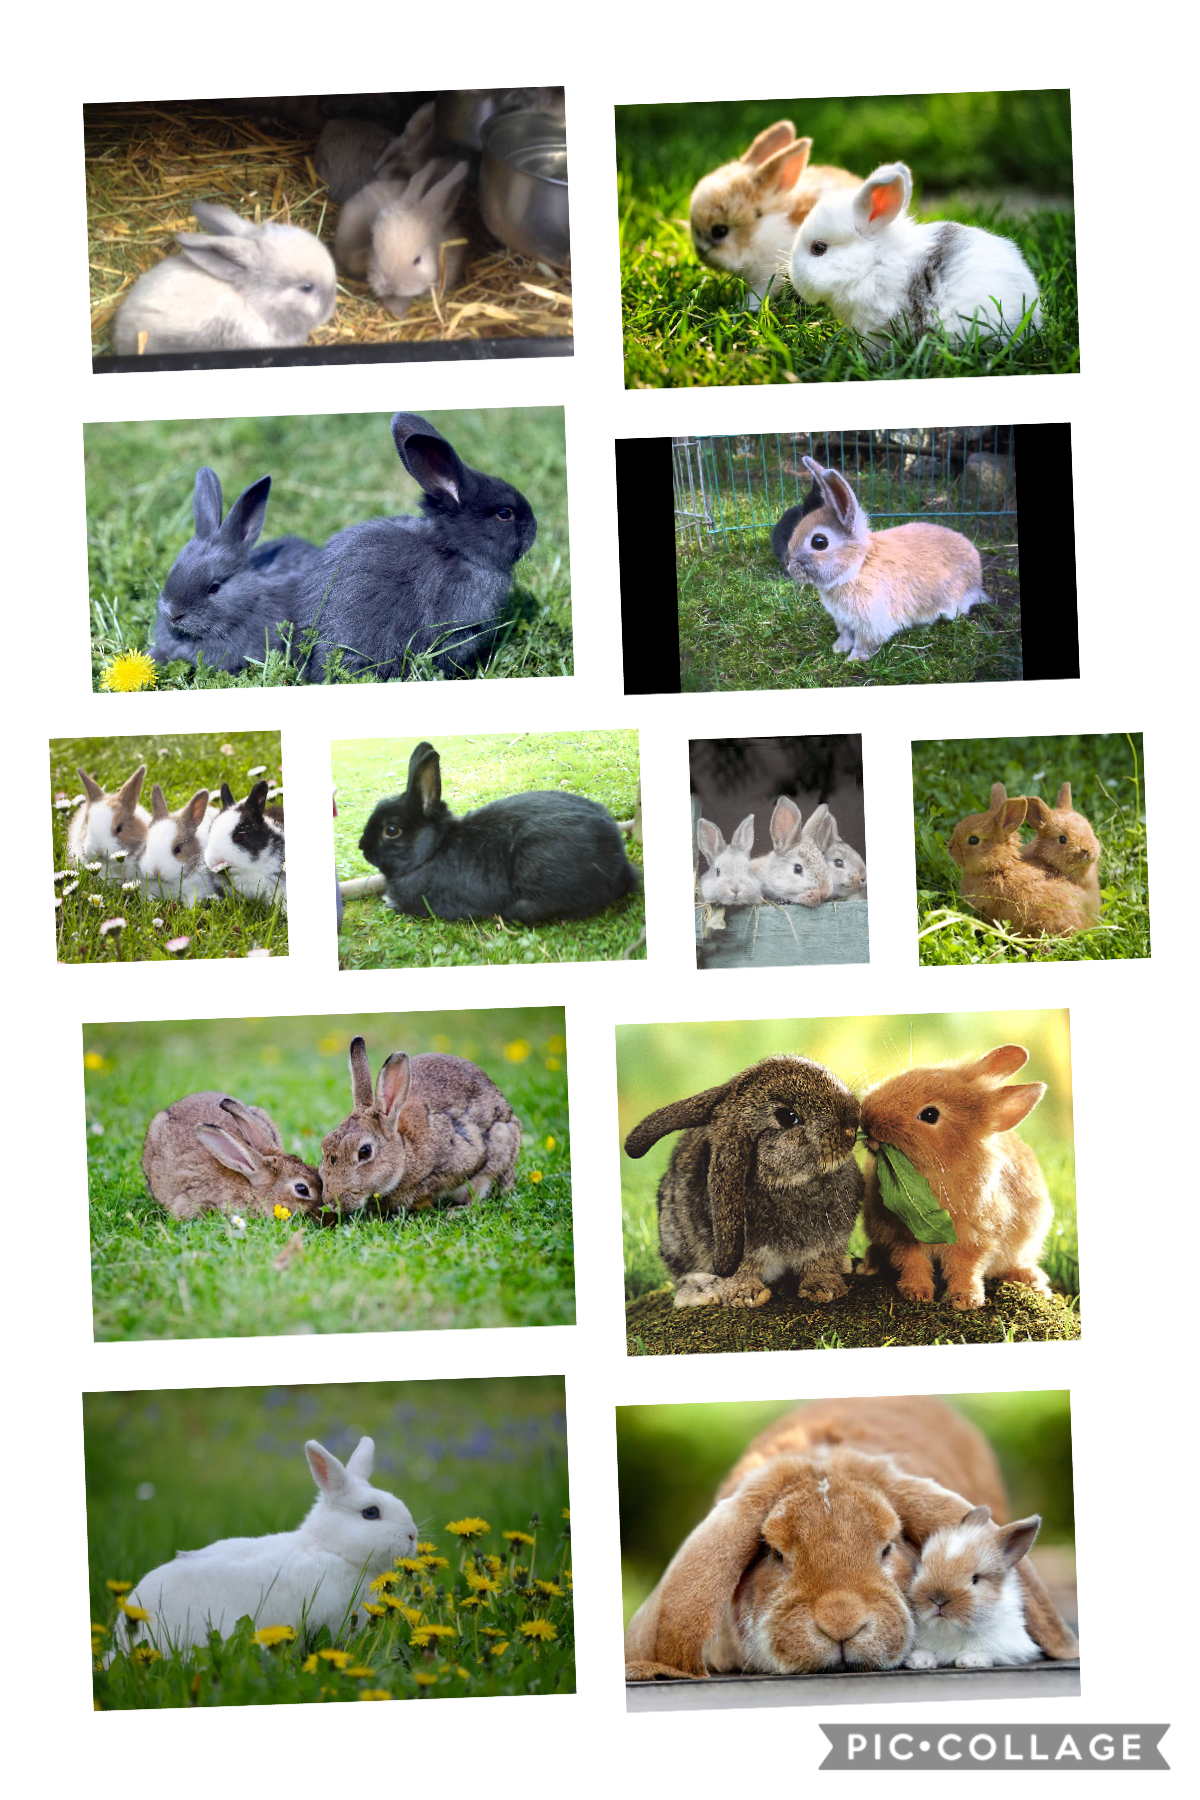 I love rabbits 🐰 